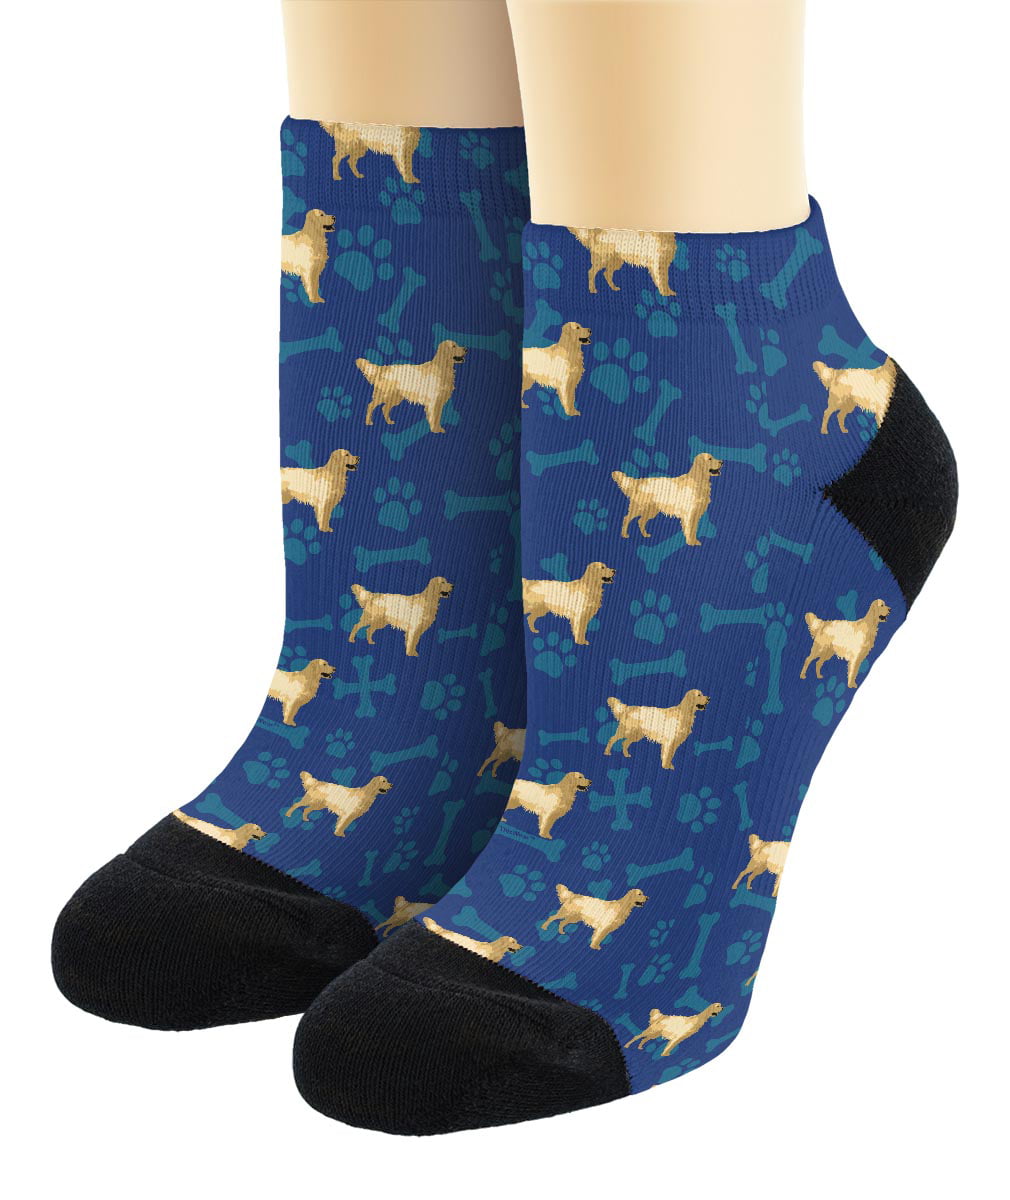 Retrievers Dogs Owners Socks Novelty Gift I Love Golden Retriever dog Socks 